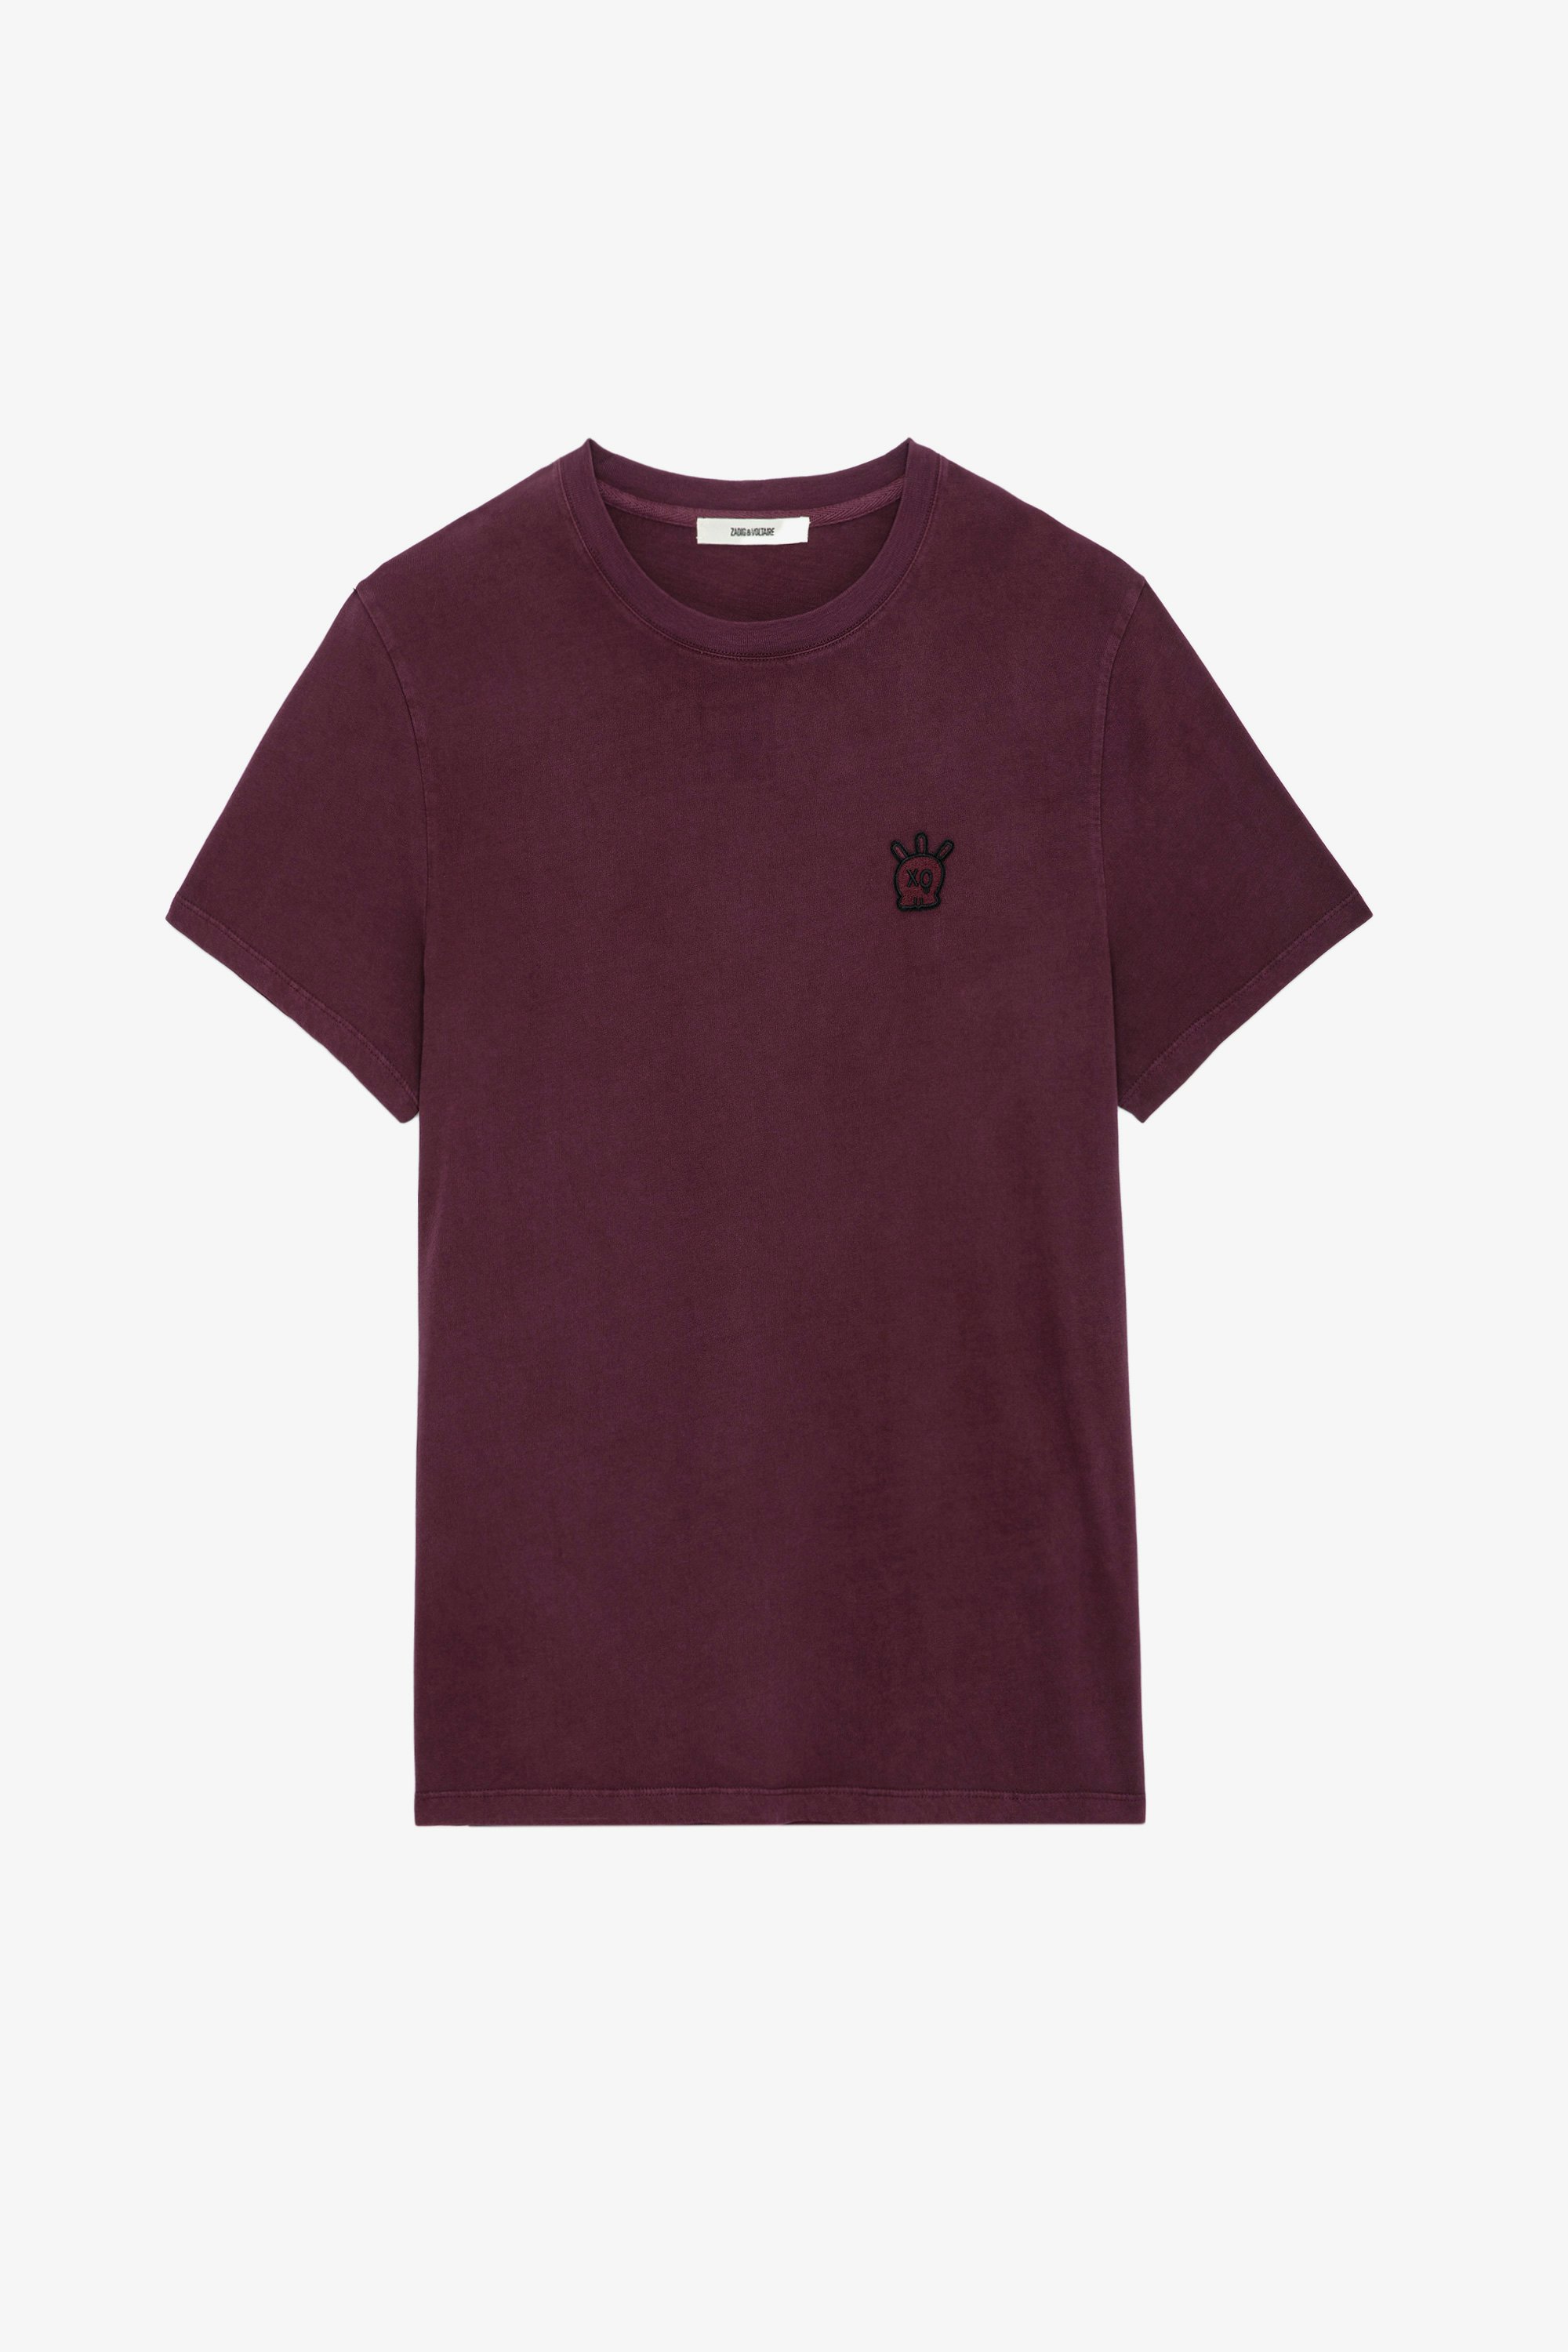 T-Shirt Tommy Skull XO - Bordeauxrotes Kurzarm-T-Shirt aus Baumwolle mit Rundhalsausschnitt und Skull-XO-Patch.